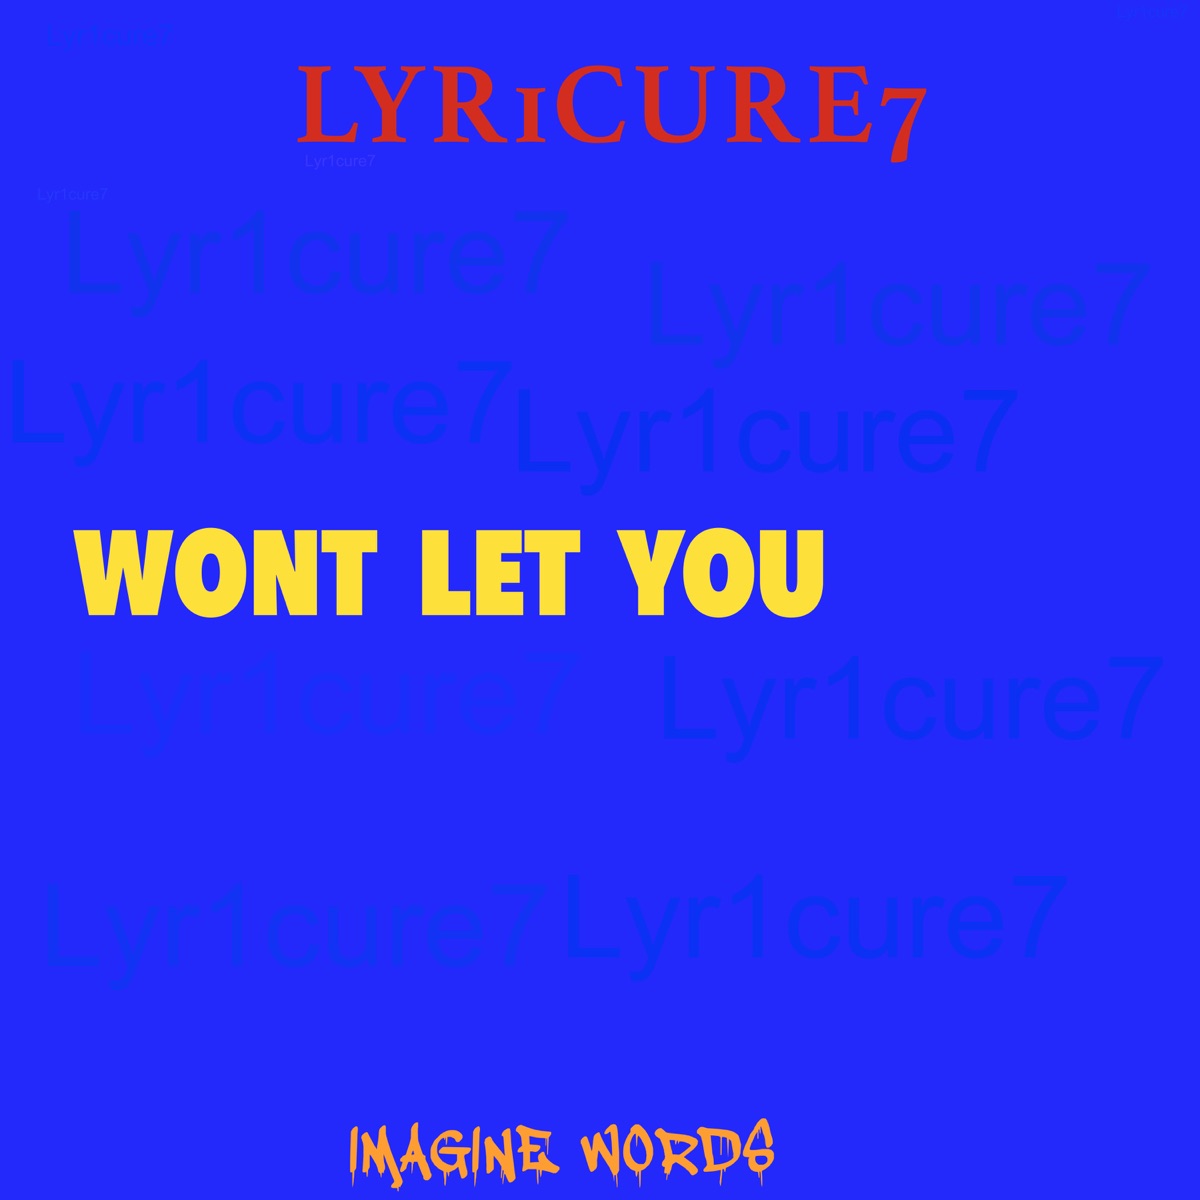 Win - Single by Lyr1cure7 on Apple Music